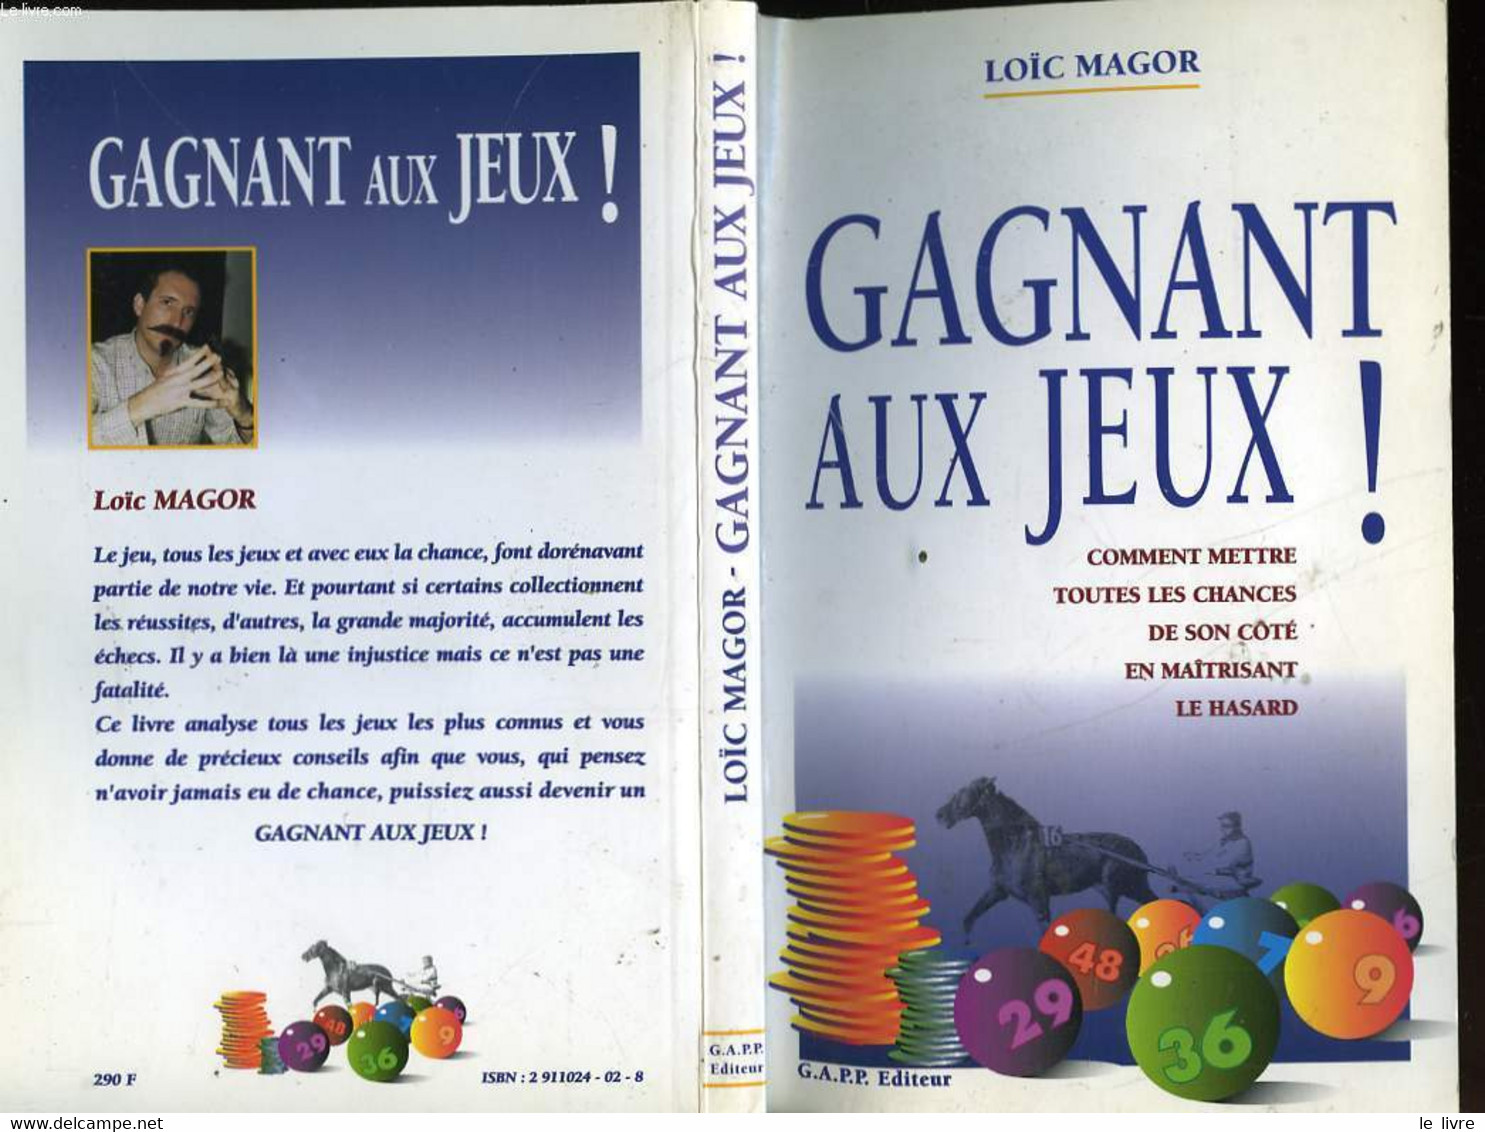 GAGNANT AUX JEUX! - MAGOR LOIC - 1995 - Palour Games